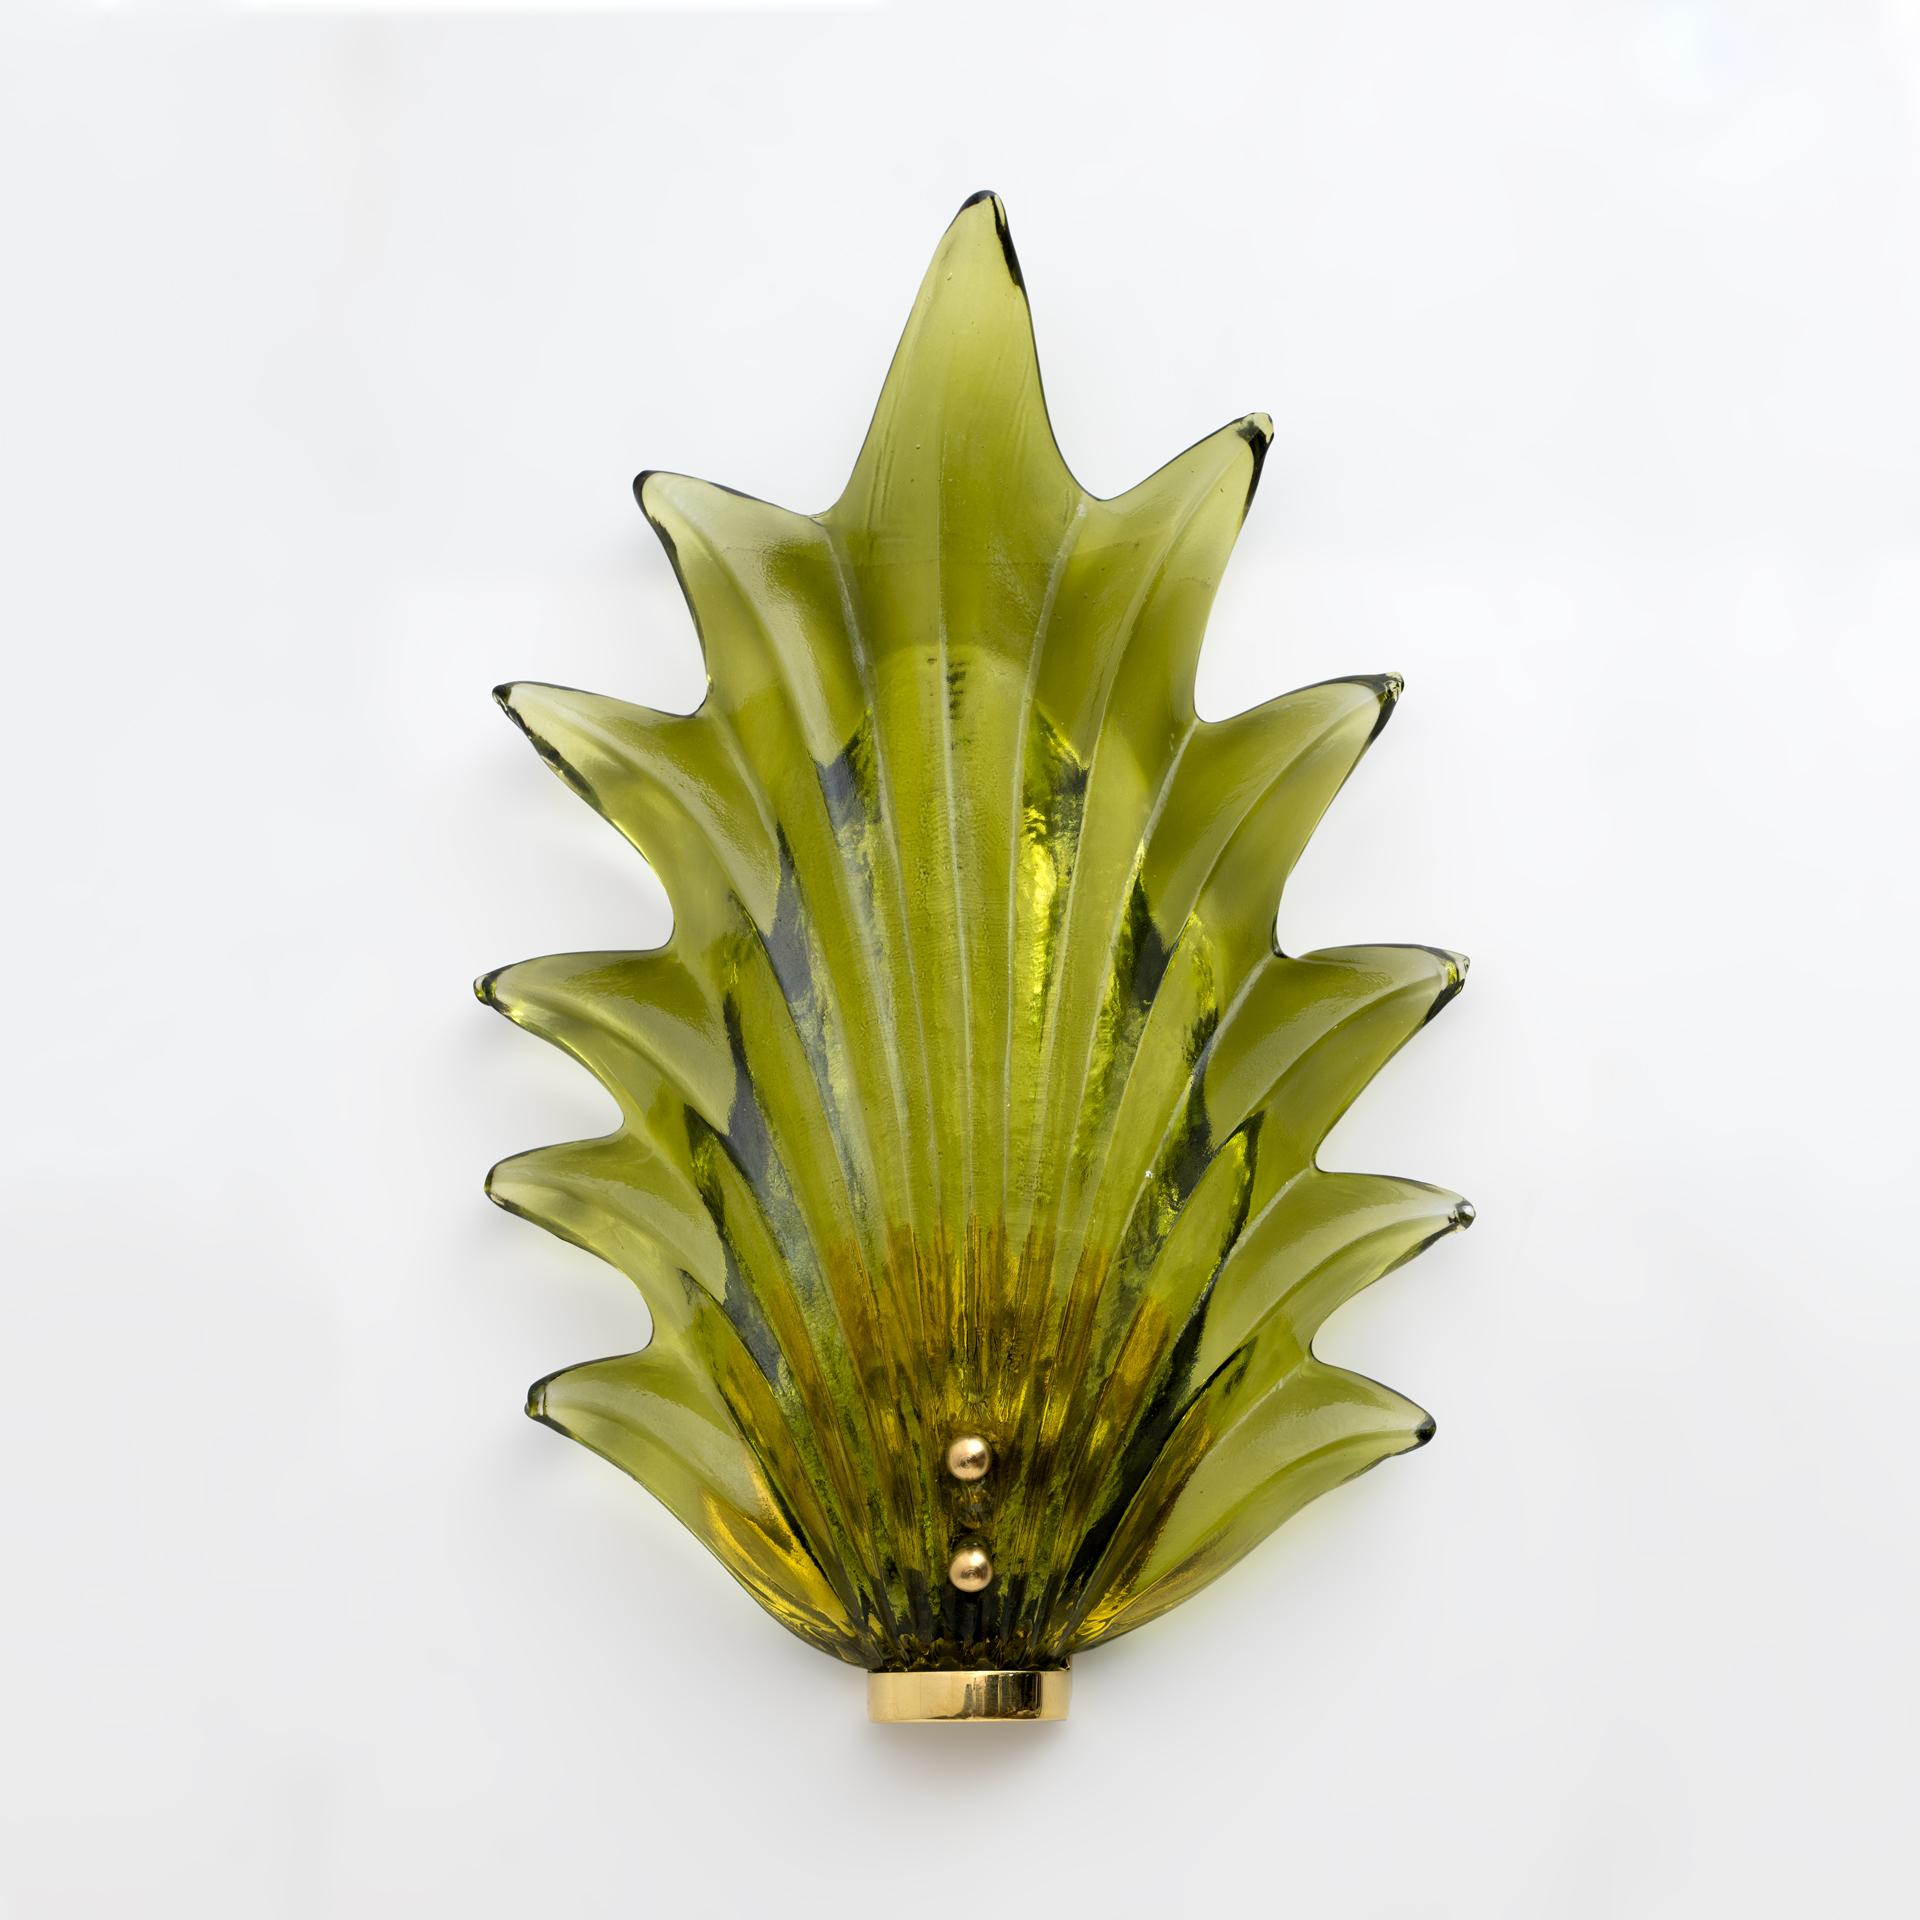 Wunderschöne Blätter aus Murano-Glas in einer herrlichen grünen Farbe, die durch den polierten Messingsockel noch schöner werden. Die Wandleuchten bestehen aus einer Messingstruktur, die mit Dübeln an der Wand befestigt wird, und einem großen grünen